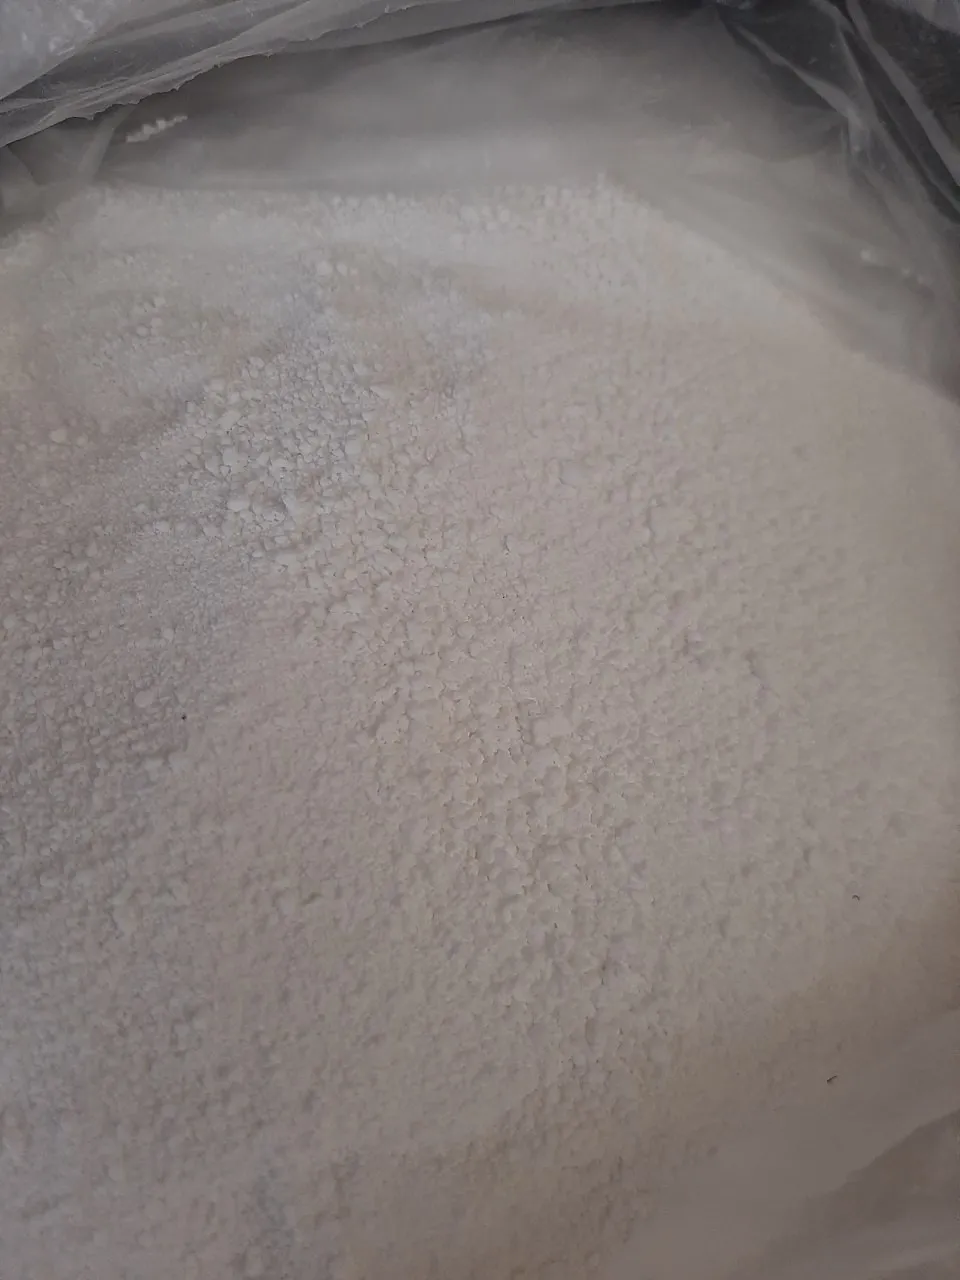 Natriy percarbonat (Sodium percarbonate)#3